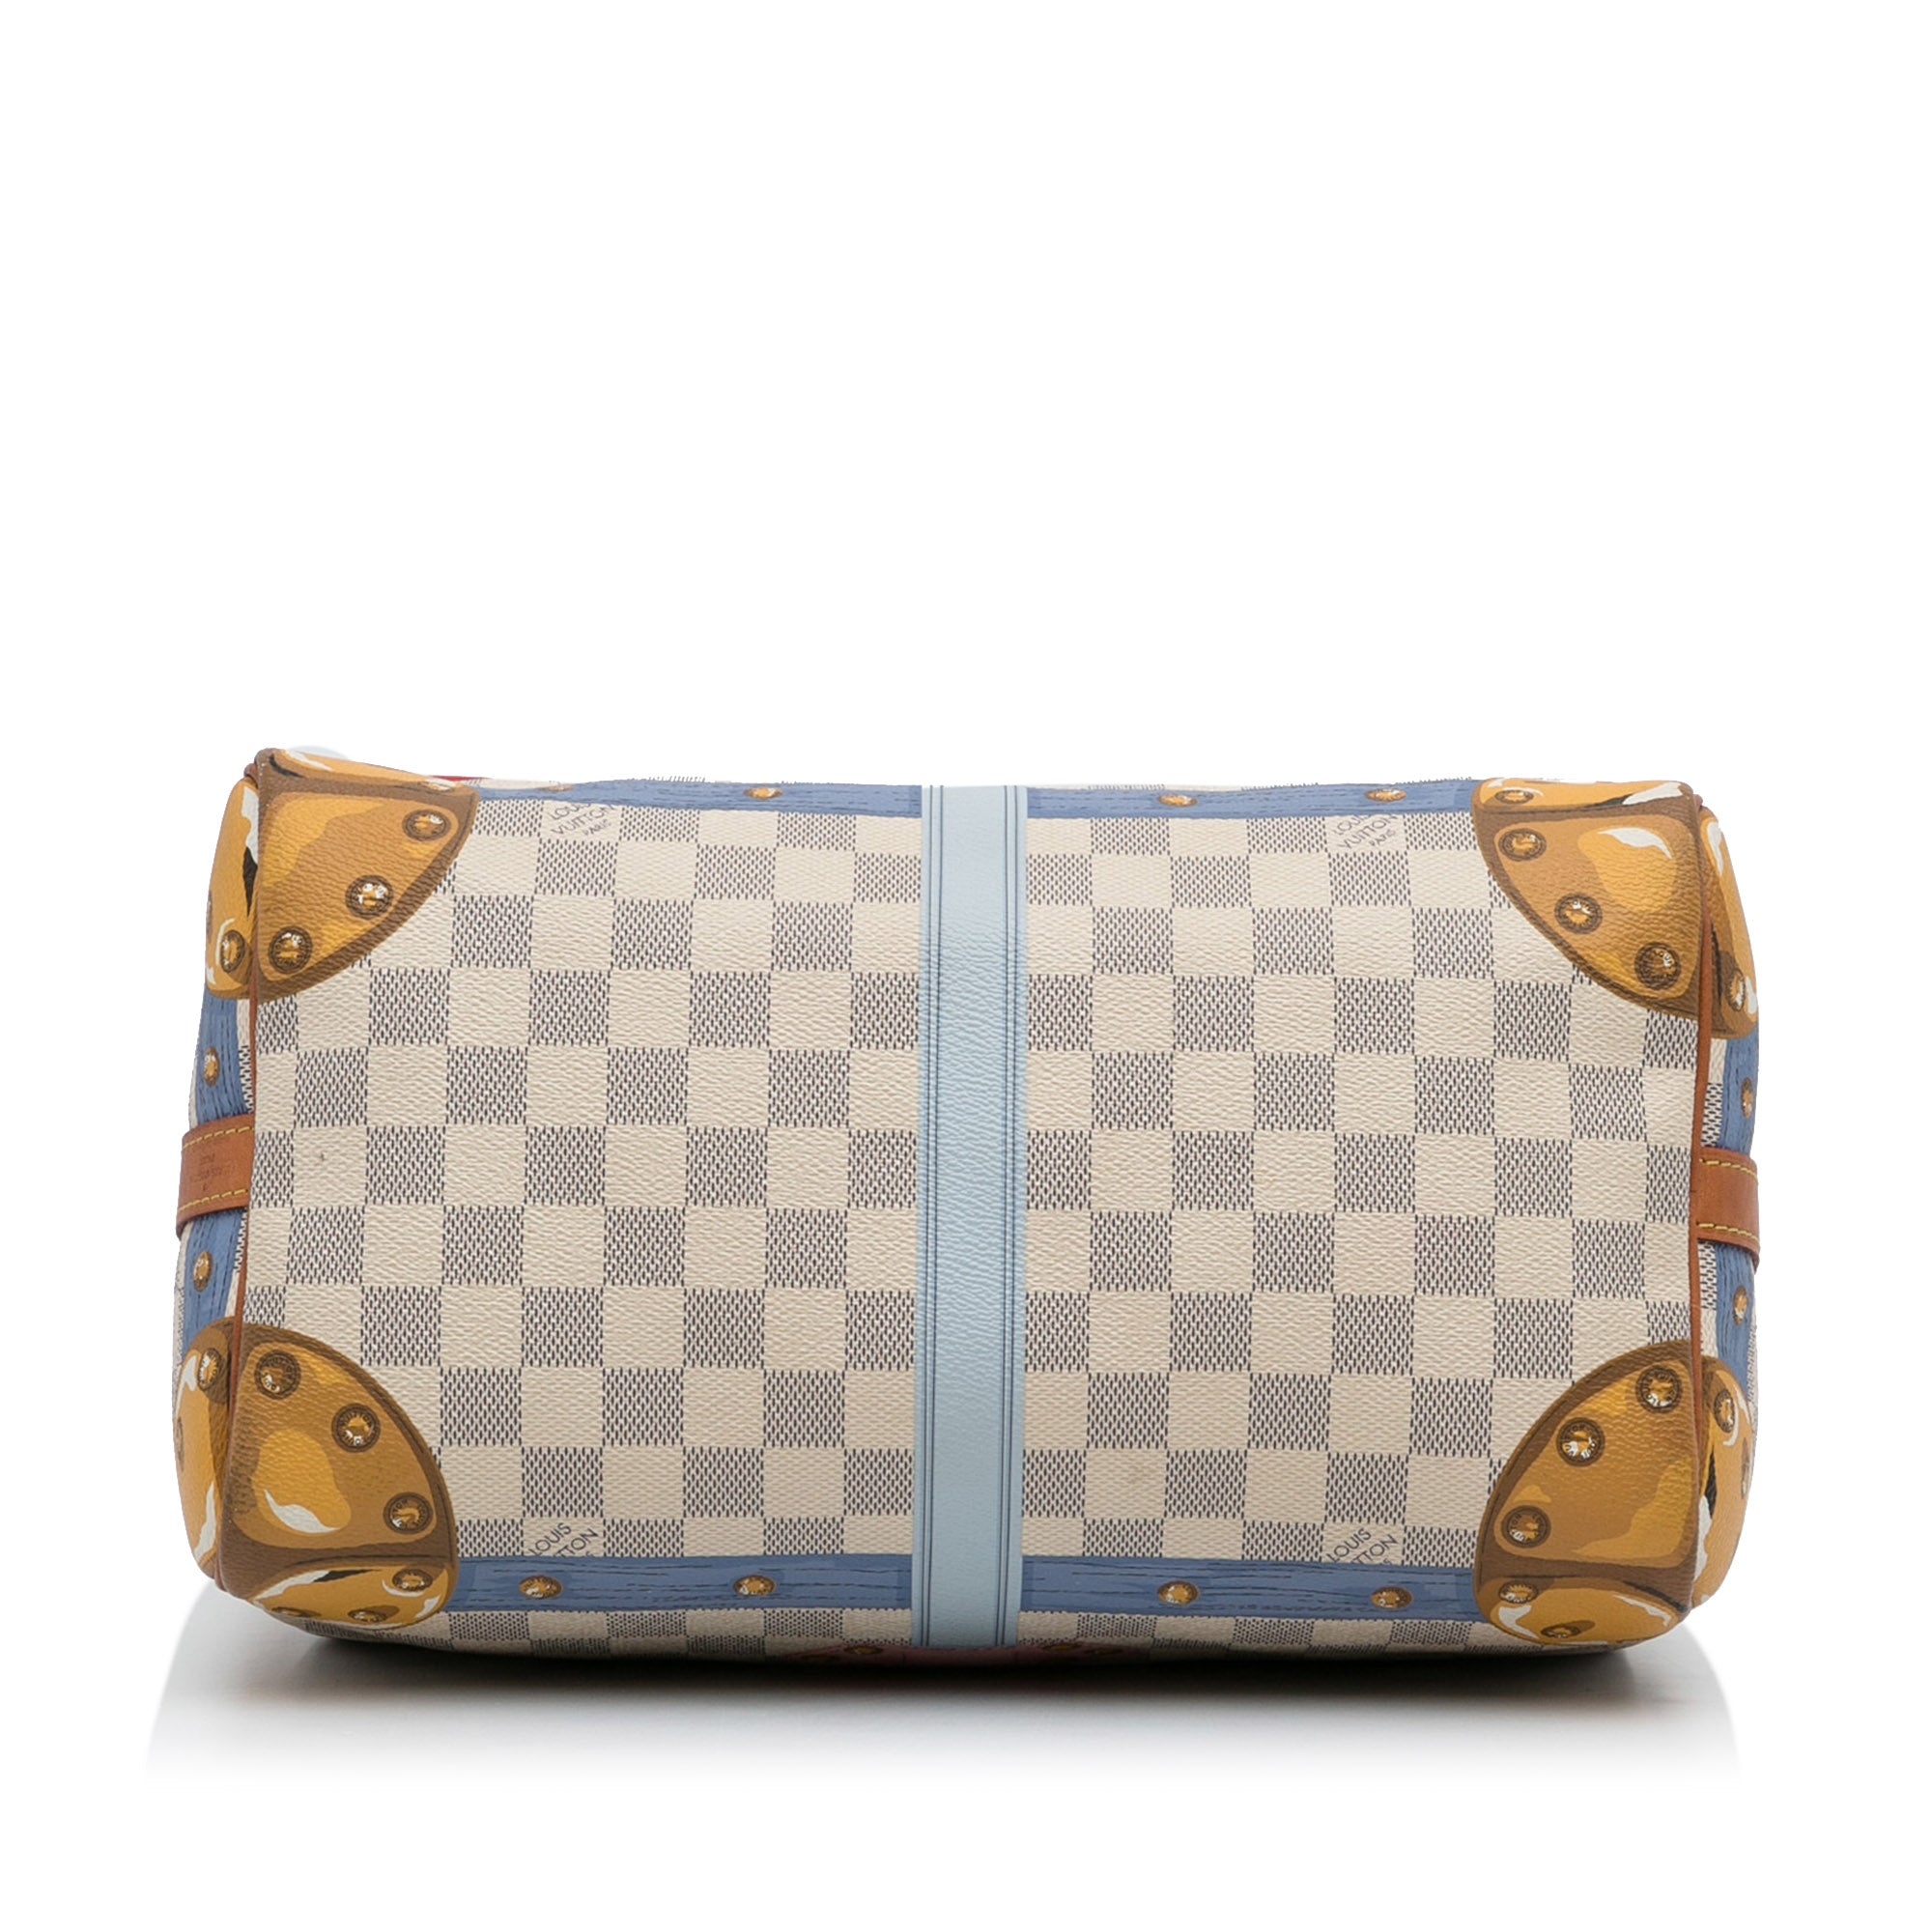 Louis Vuitton Damier Azur Canvas Speedy Bandouliere 30 Bag